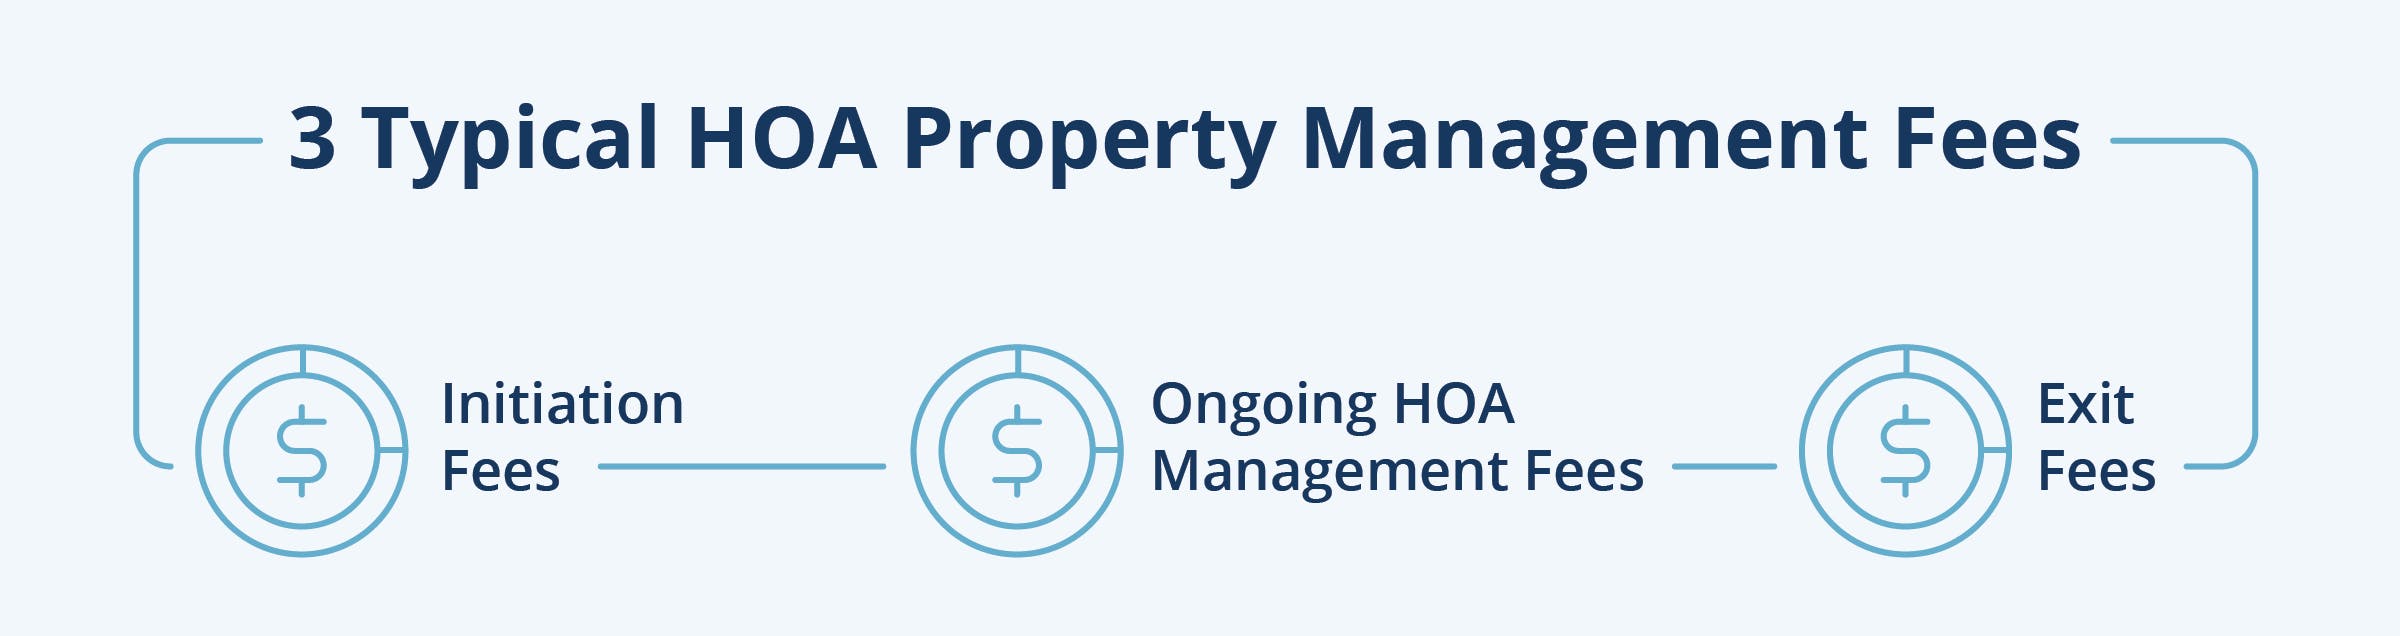 HOA property management fees typical HOA fees